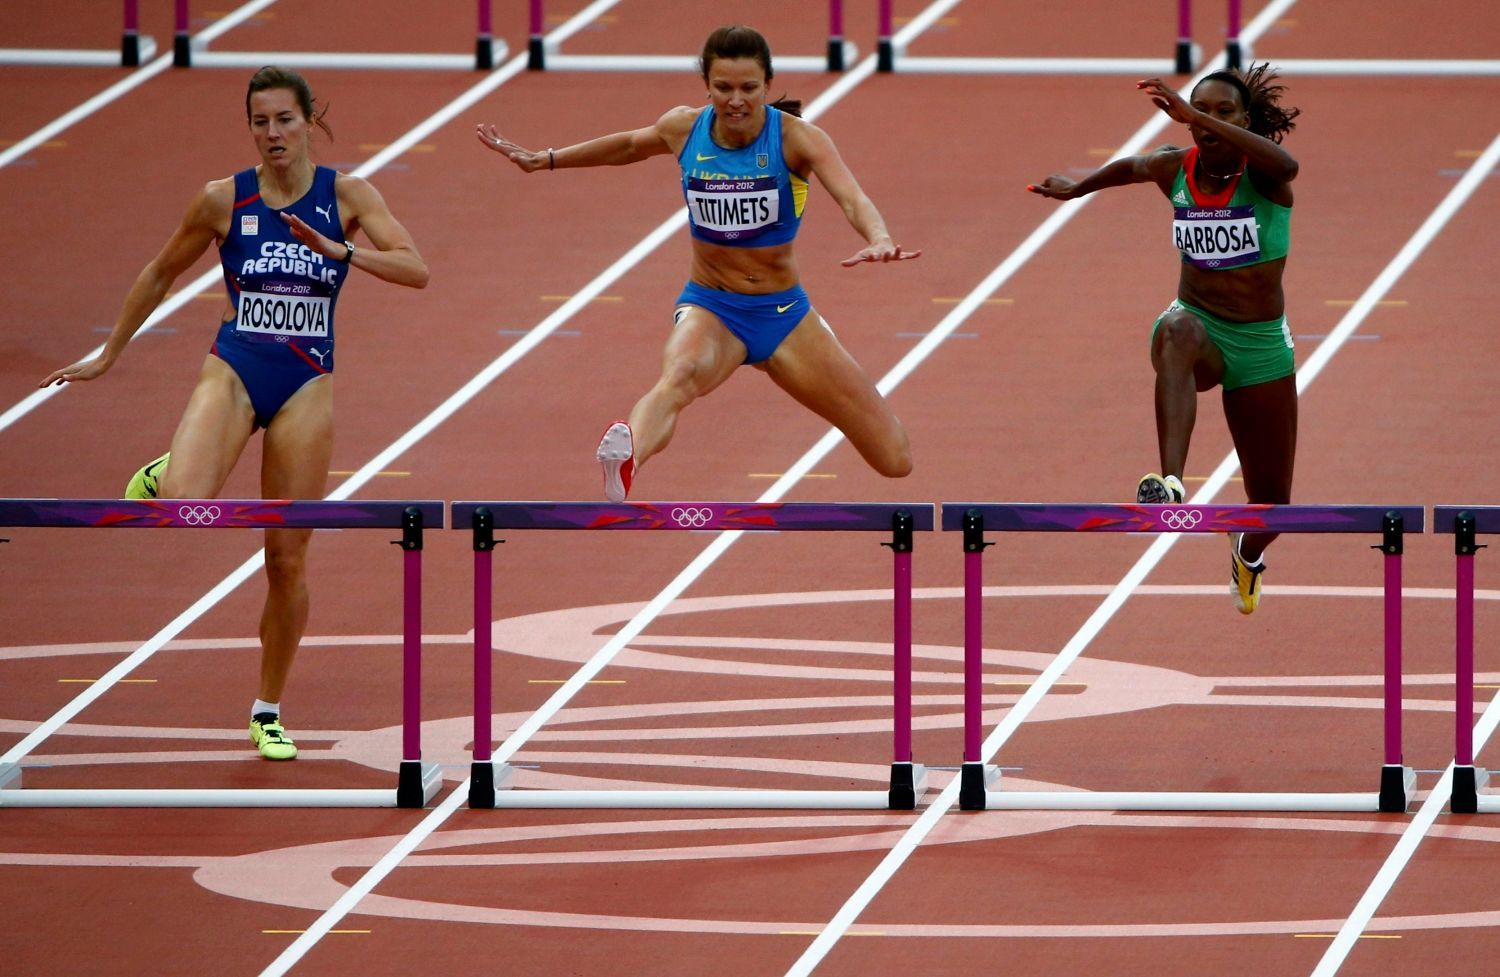 Легкая атлетика бег 100 м. Бег с барьерами на 400 м. Лондон 2012 бег с барьерами. Легкая атлетика 400 метров с барьерами. Техника бега на 400 м с барьерами.